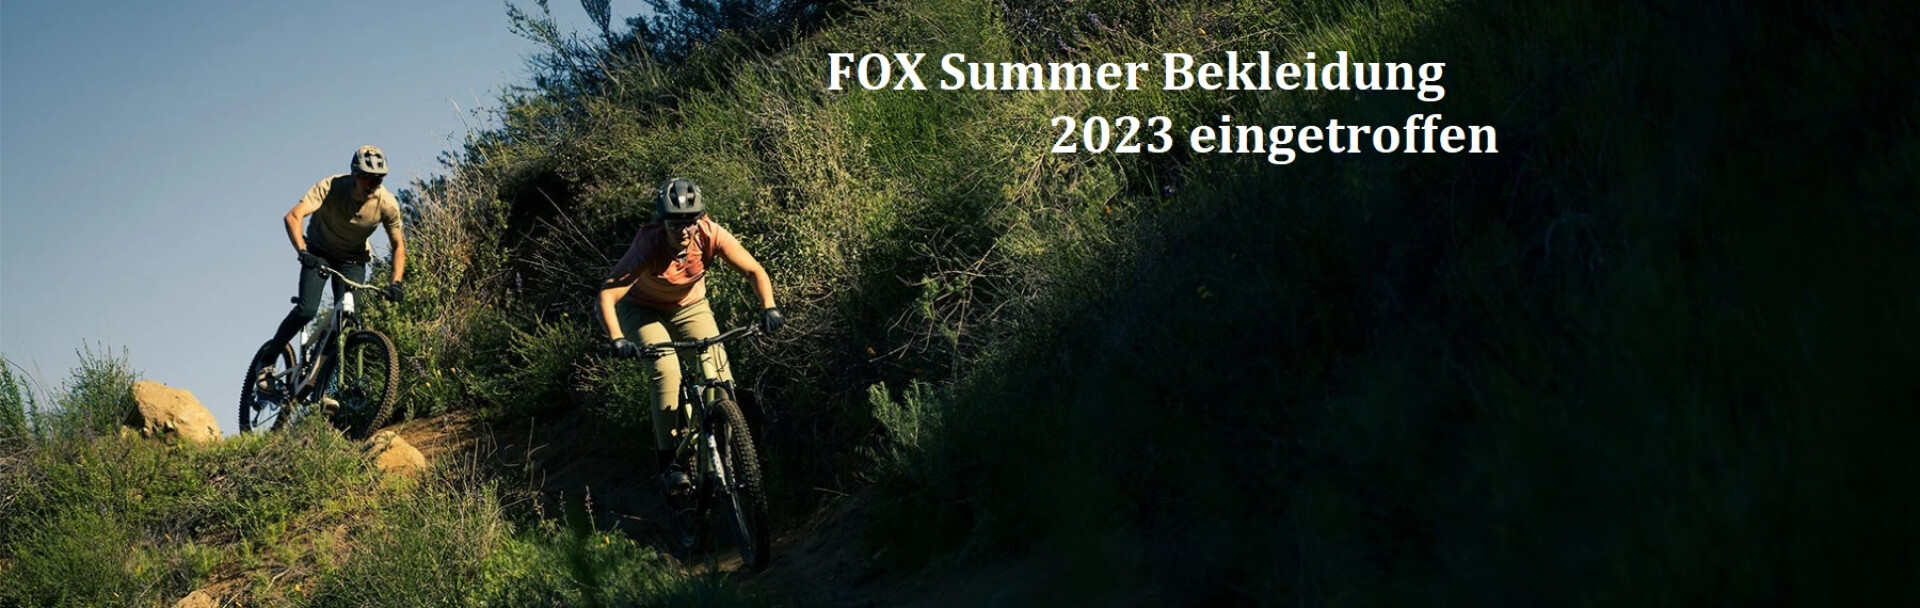 Fox Summer